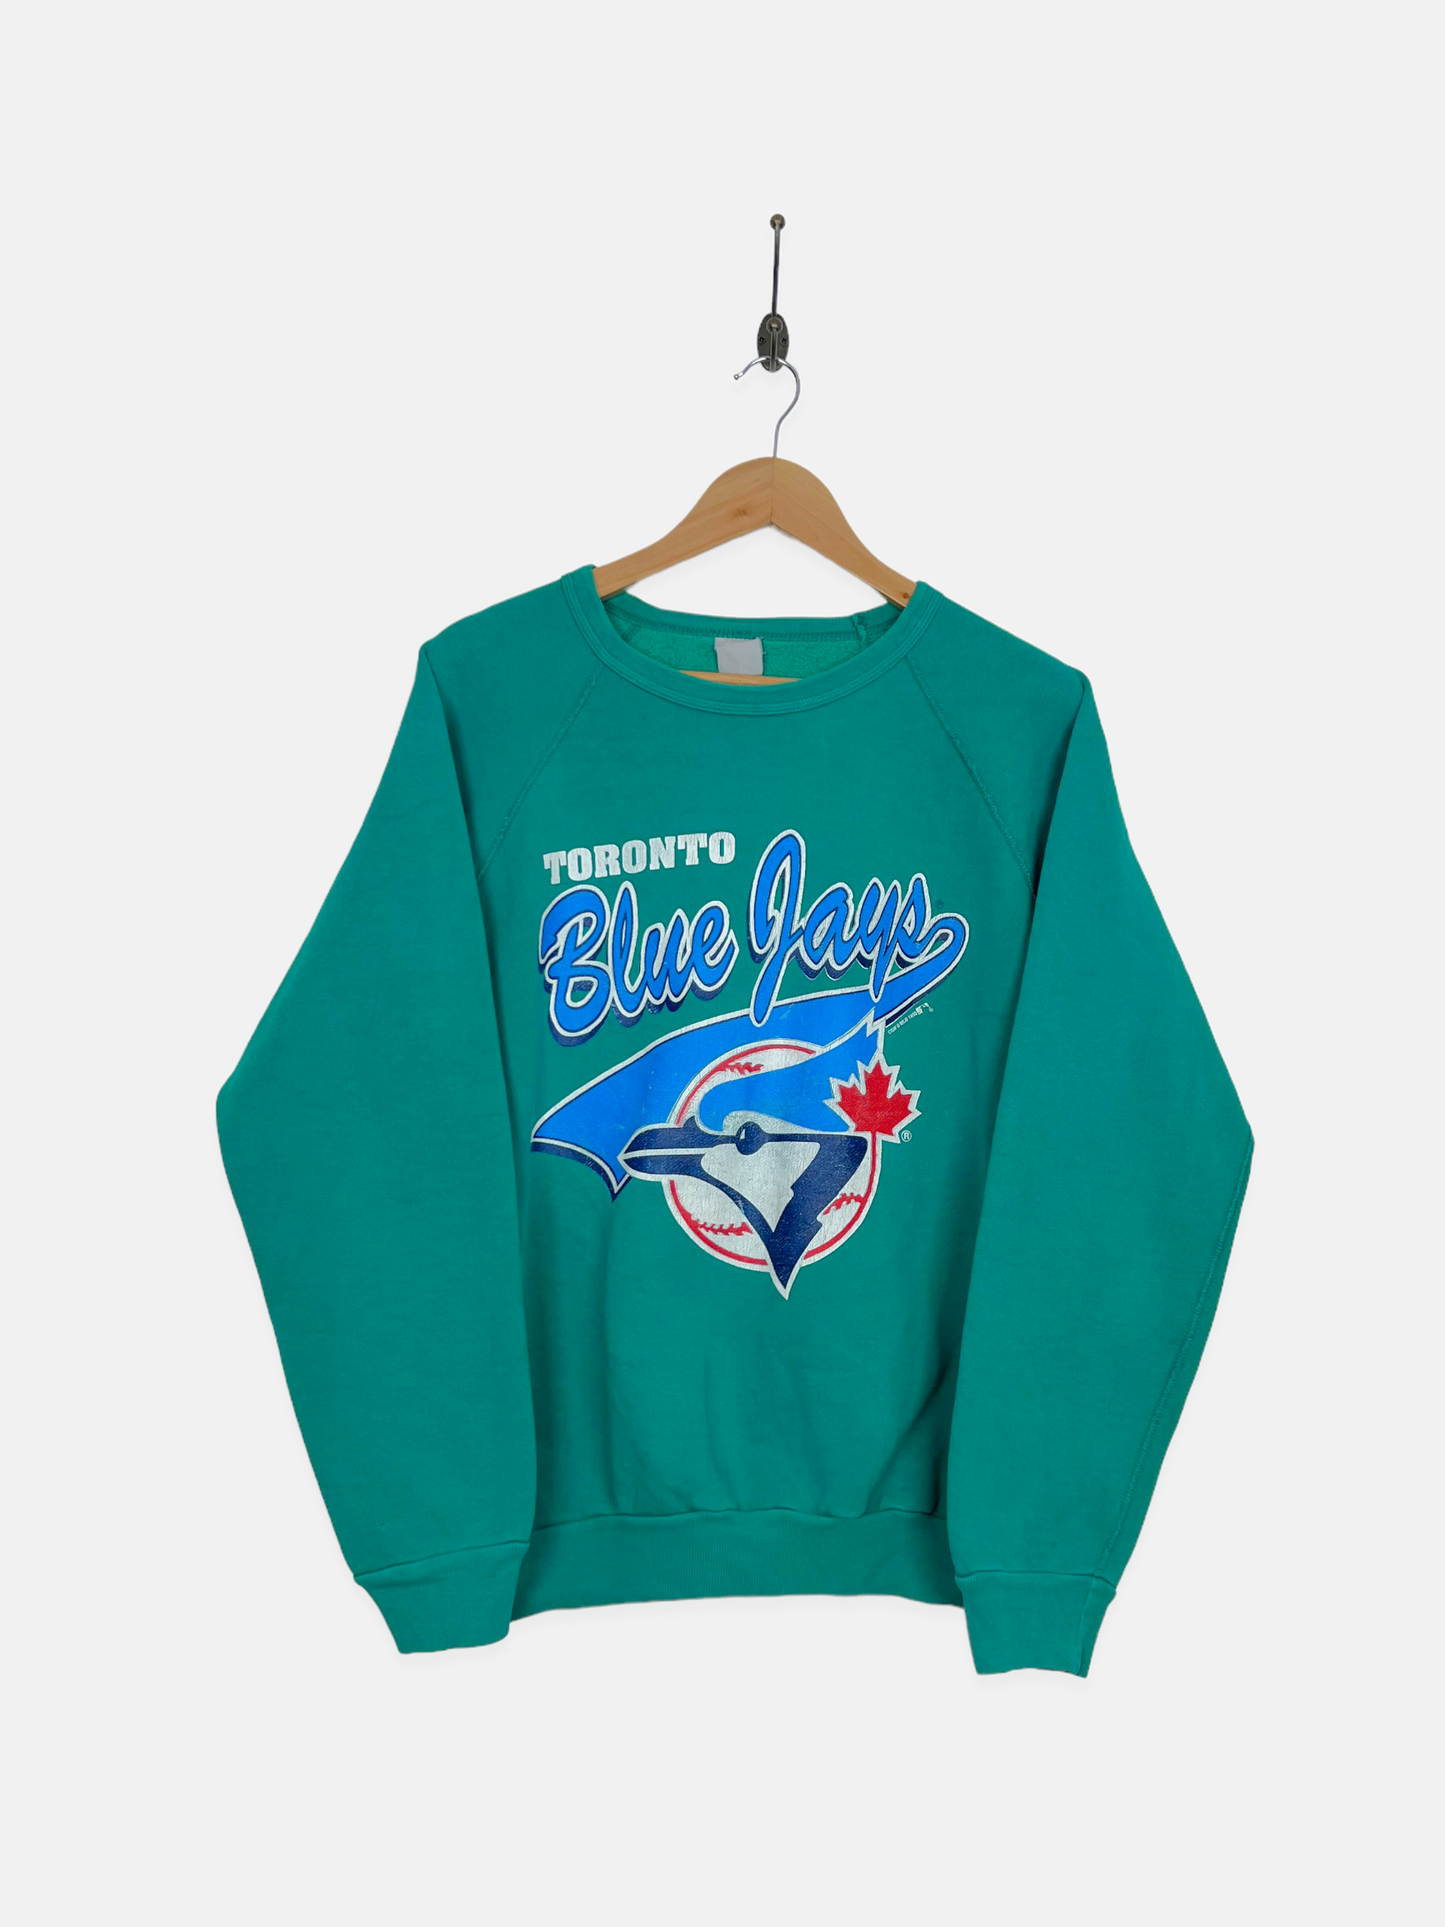 Vintage 90's Toronto Blue Jays Sweater 